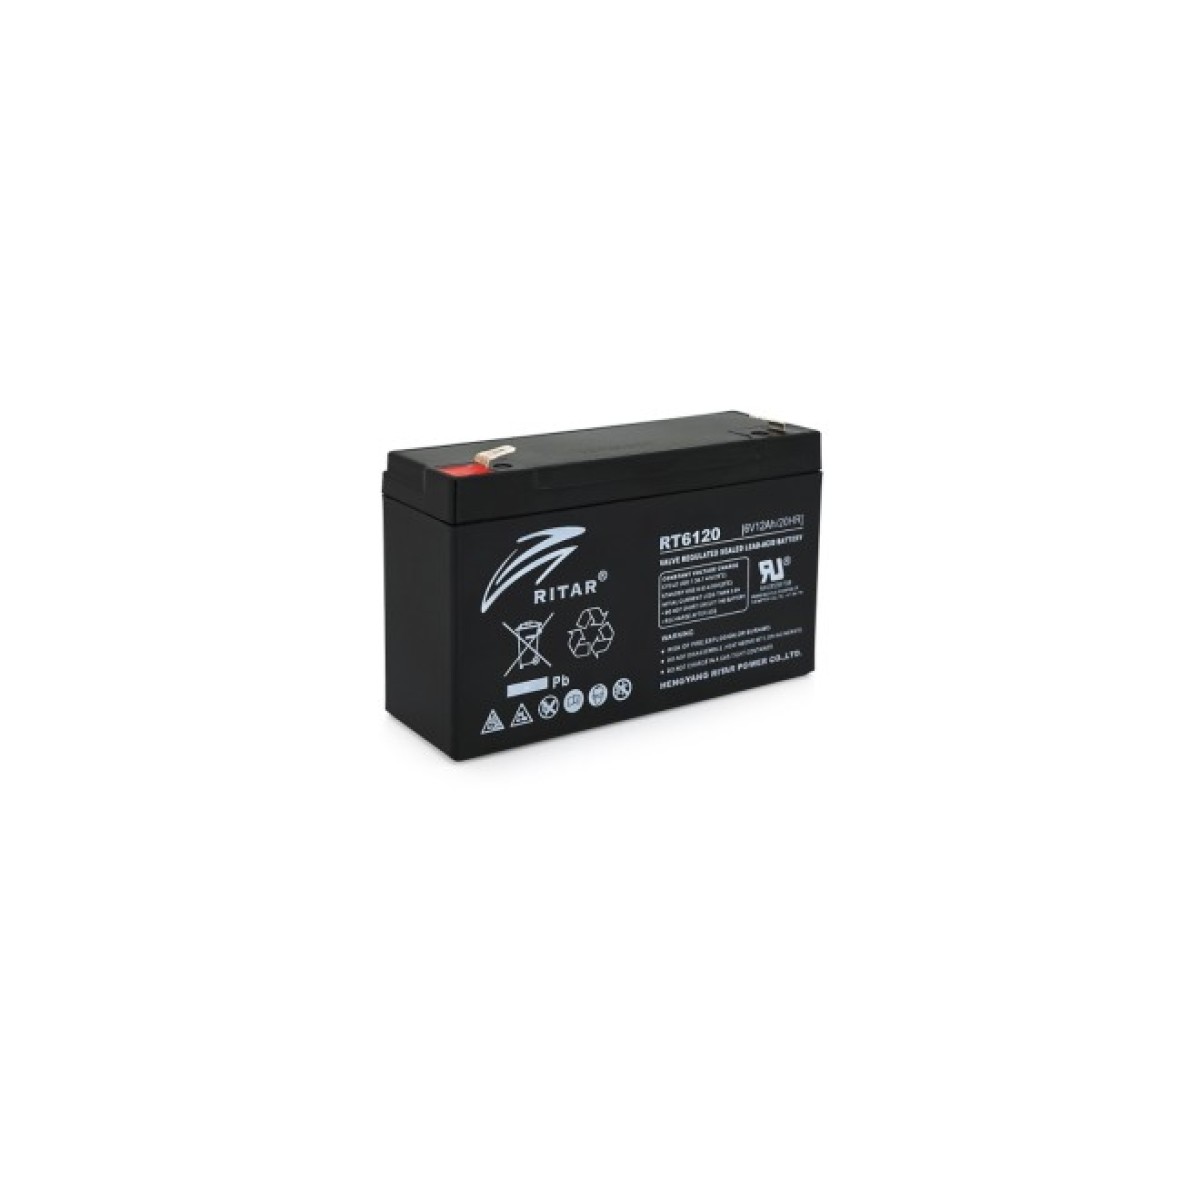 Батарея к ИБП Ritar RT6120A, 6V-12Ah (RT6120) 98_98.jpg